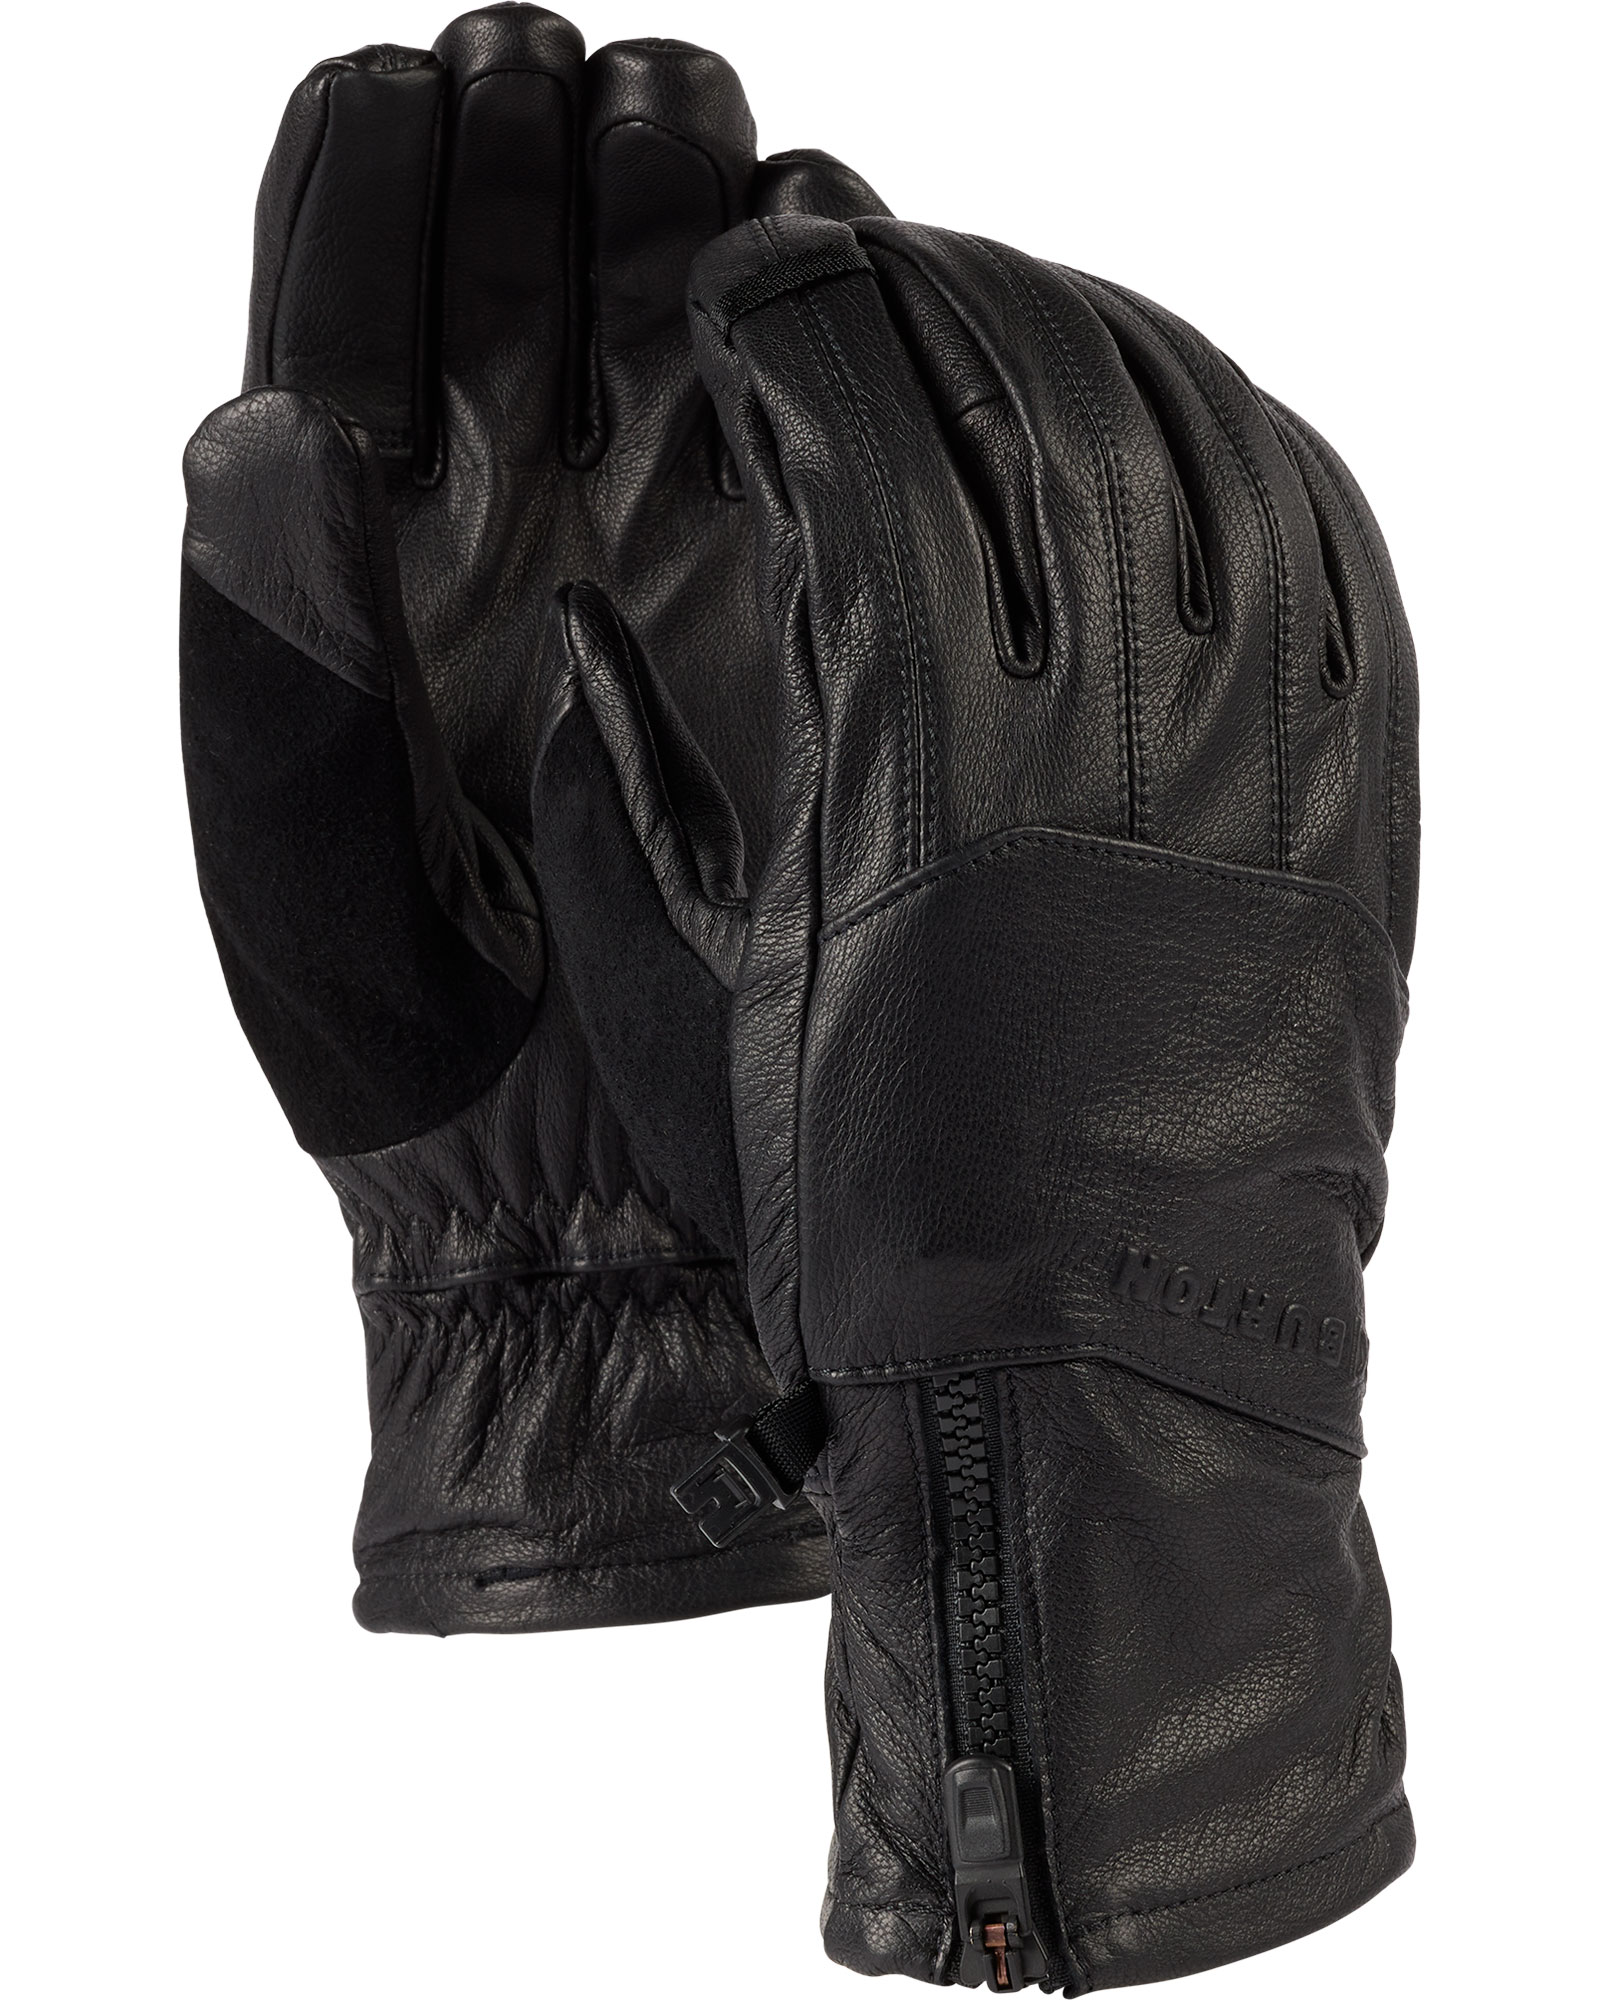 Burton [ak] Leather Tech Men's Gloves